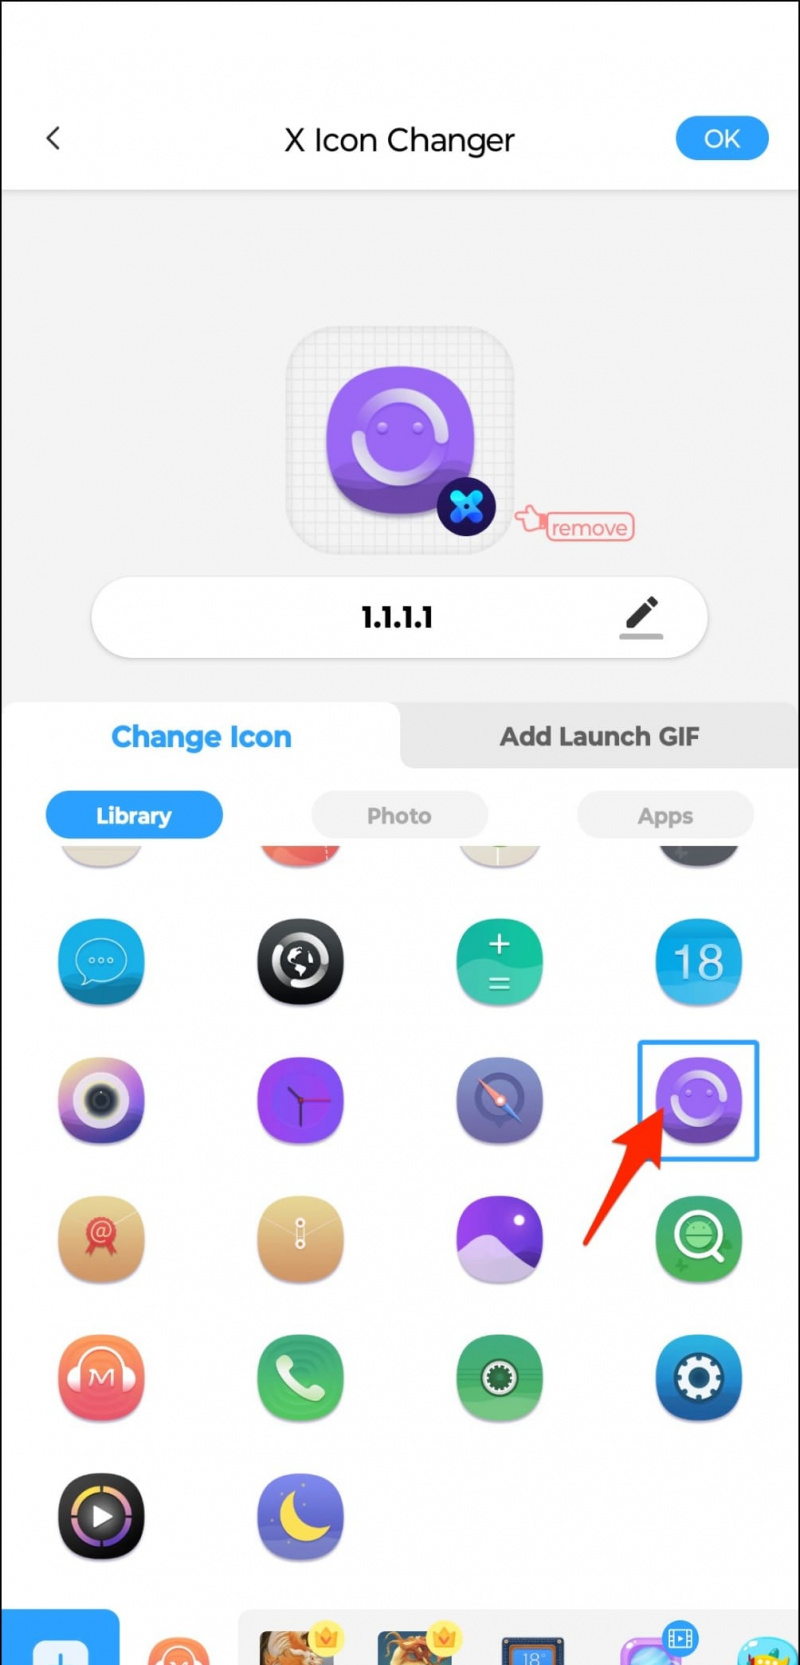   Personalizza l'app utilizzando Icon Changer